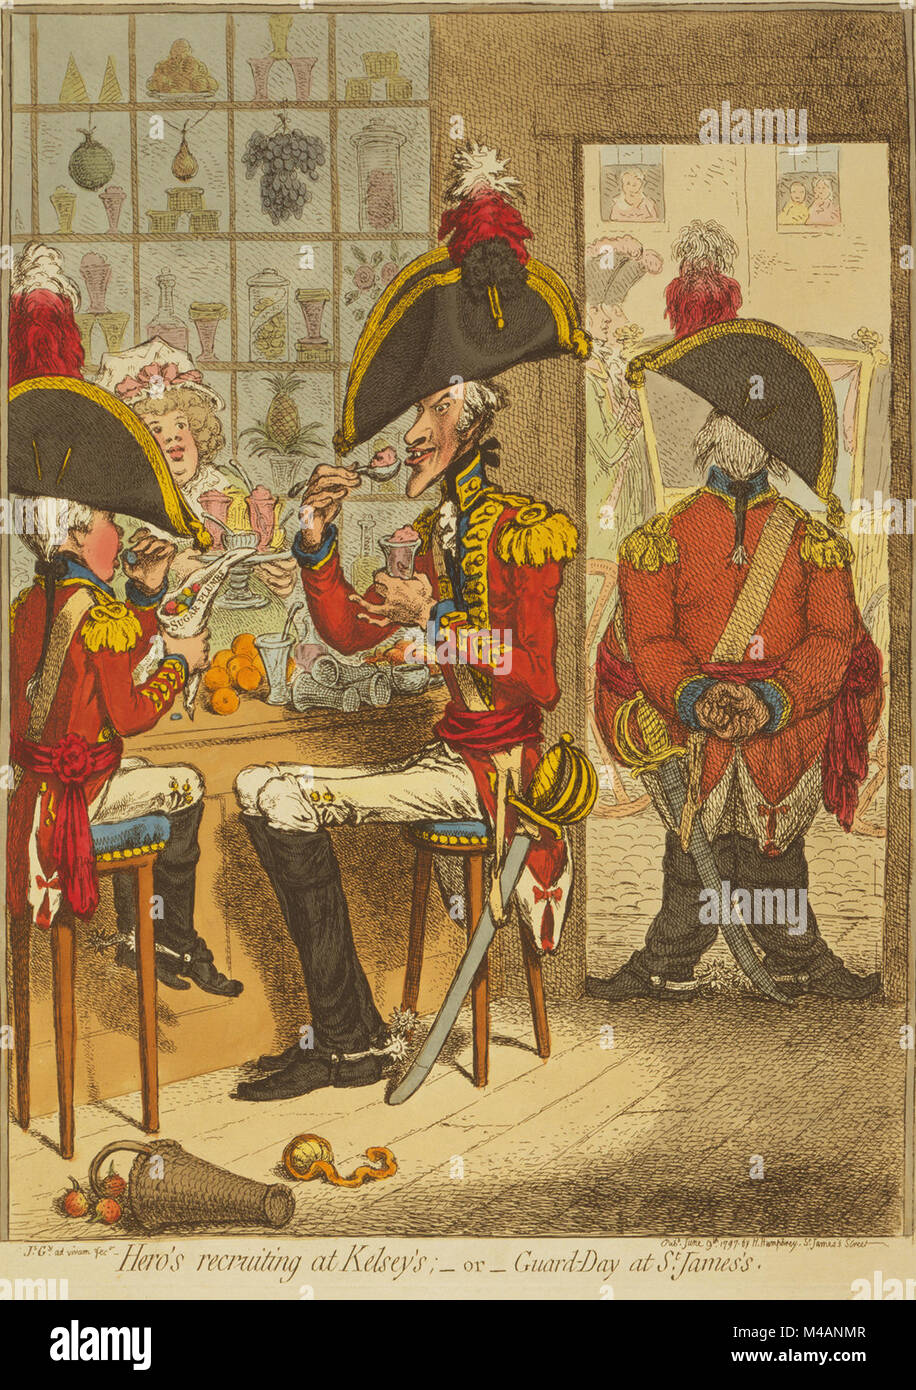 Hero Recruiting bei Kelsey's; - oder - Guard-Day am St. James's von James Gillray veröffentlicht 1797. Zwei Offiziere, die auf eine große, schlaksige, älterer Mann und das andere ein Kind, sitzen einander gegenüber Süßigkeiten essen in einer Konditorei. Ein dritter Offizier, Fett und Knock-Kneed, wacht in der Tür. Die Fenster der Shop sind voll von verschiedenen Obst und Süßigkeiten. Stockfoto